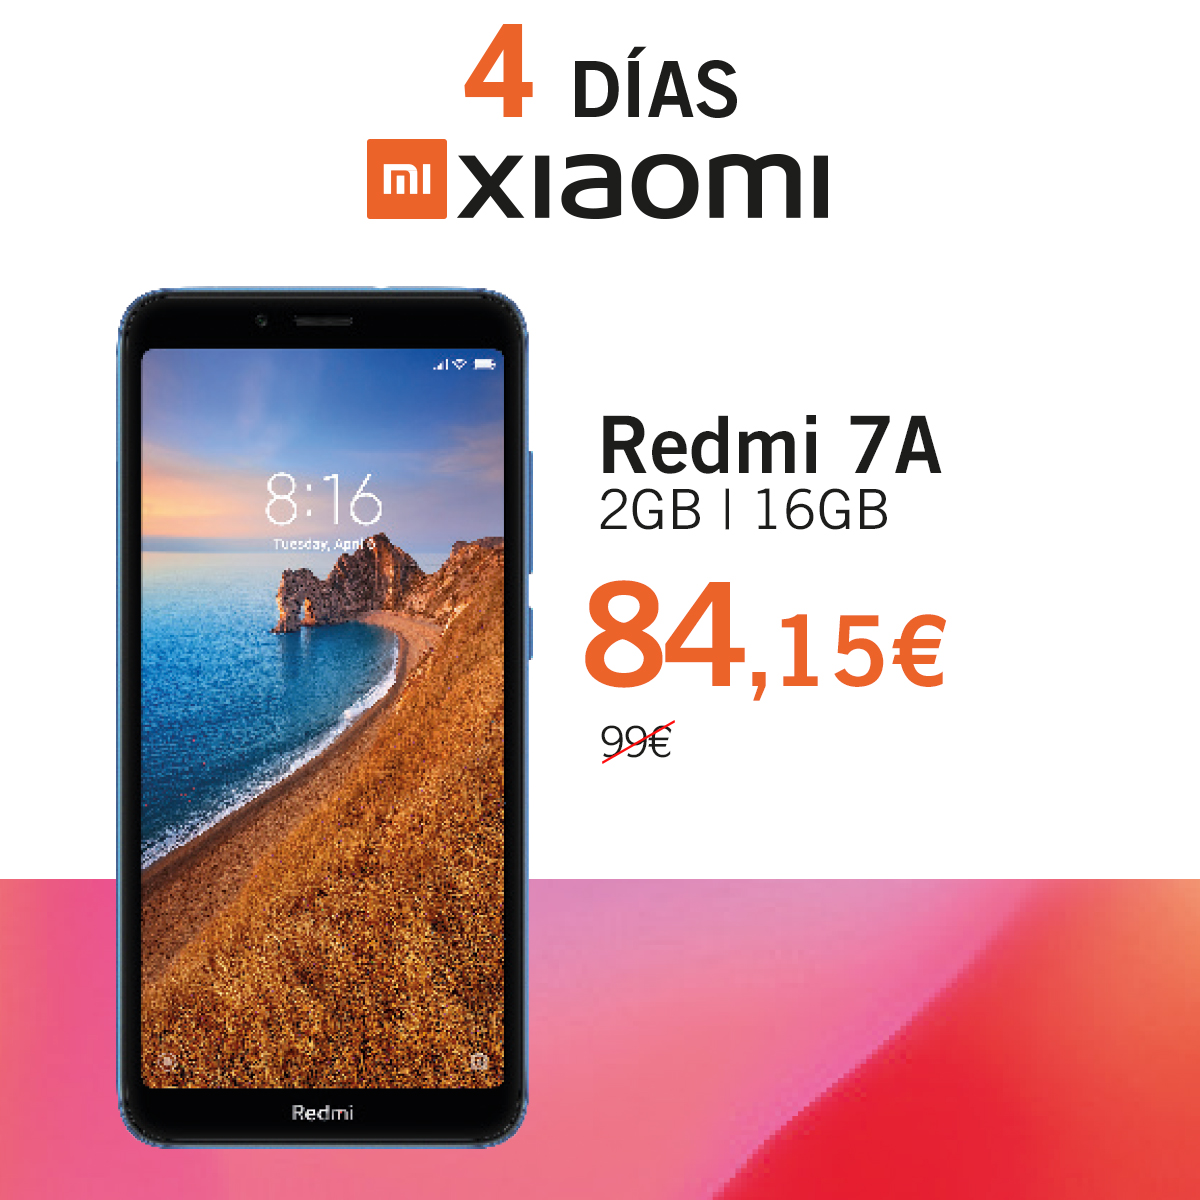 Redmi 7a Dias Xiaomi